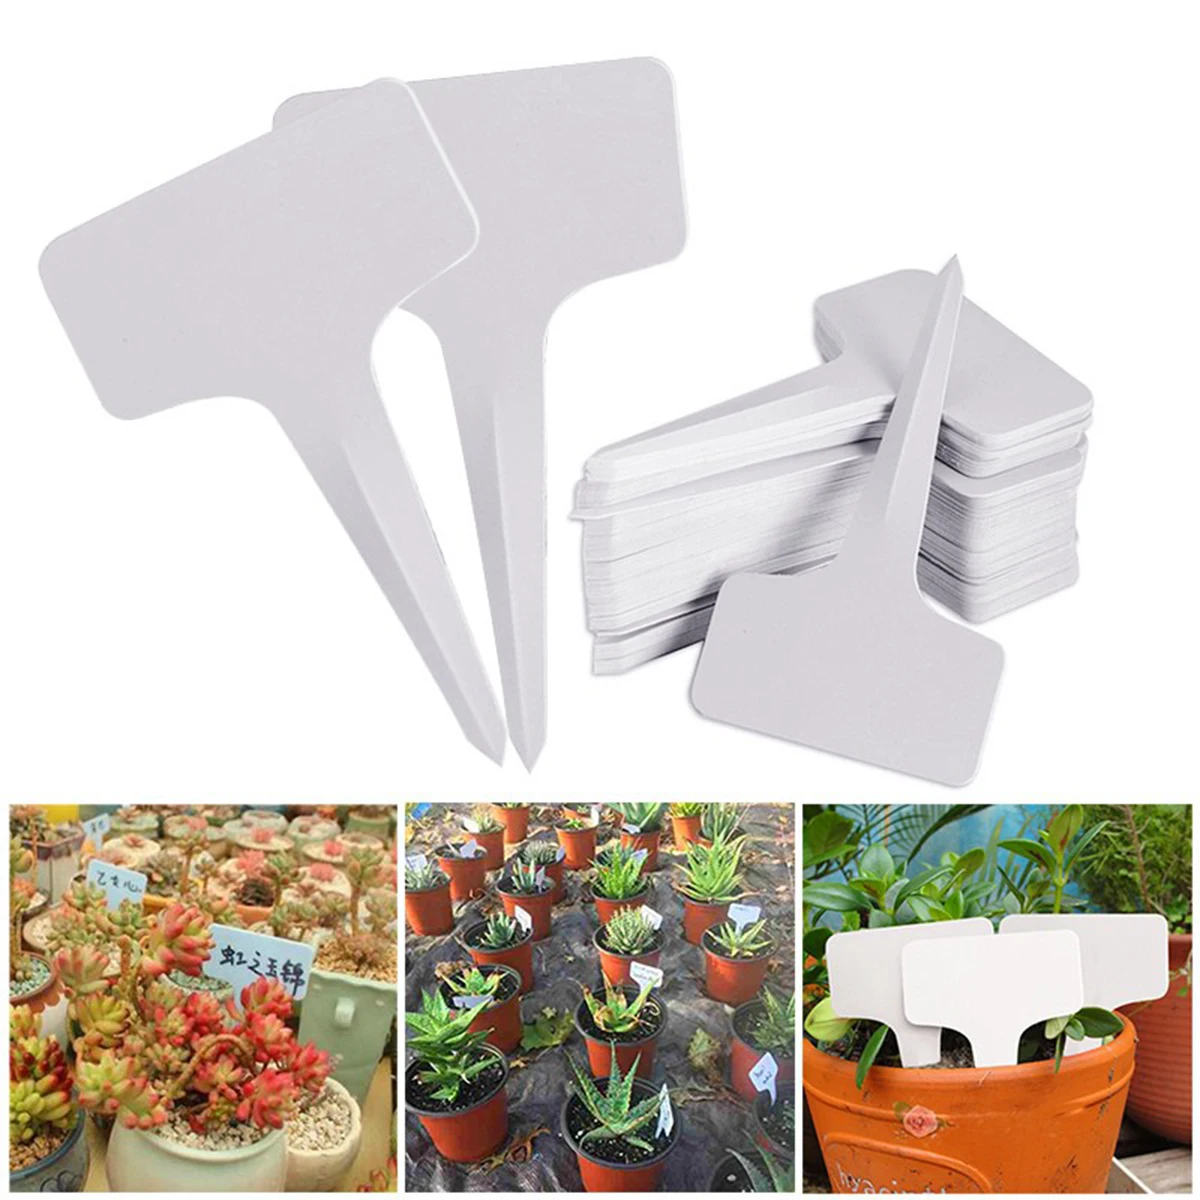 Бирка для растений Т-образная пластиковая 100 шт. украшения сада | Дом и сад